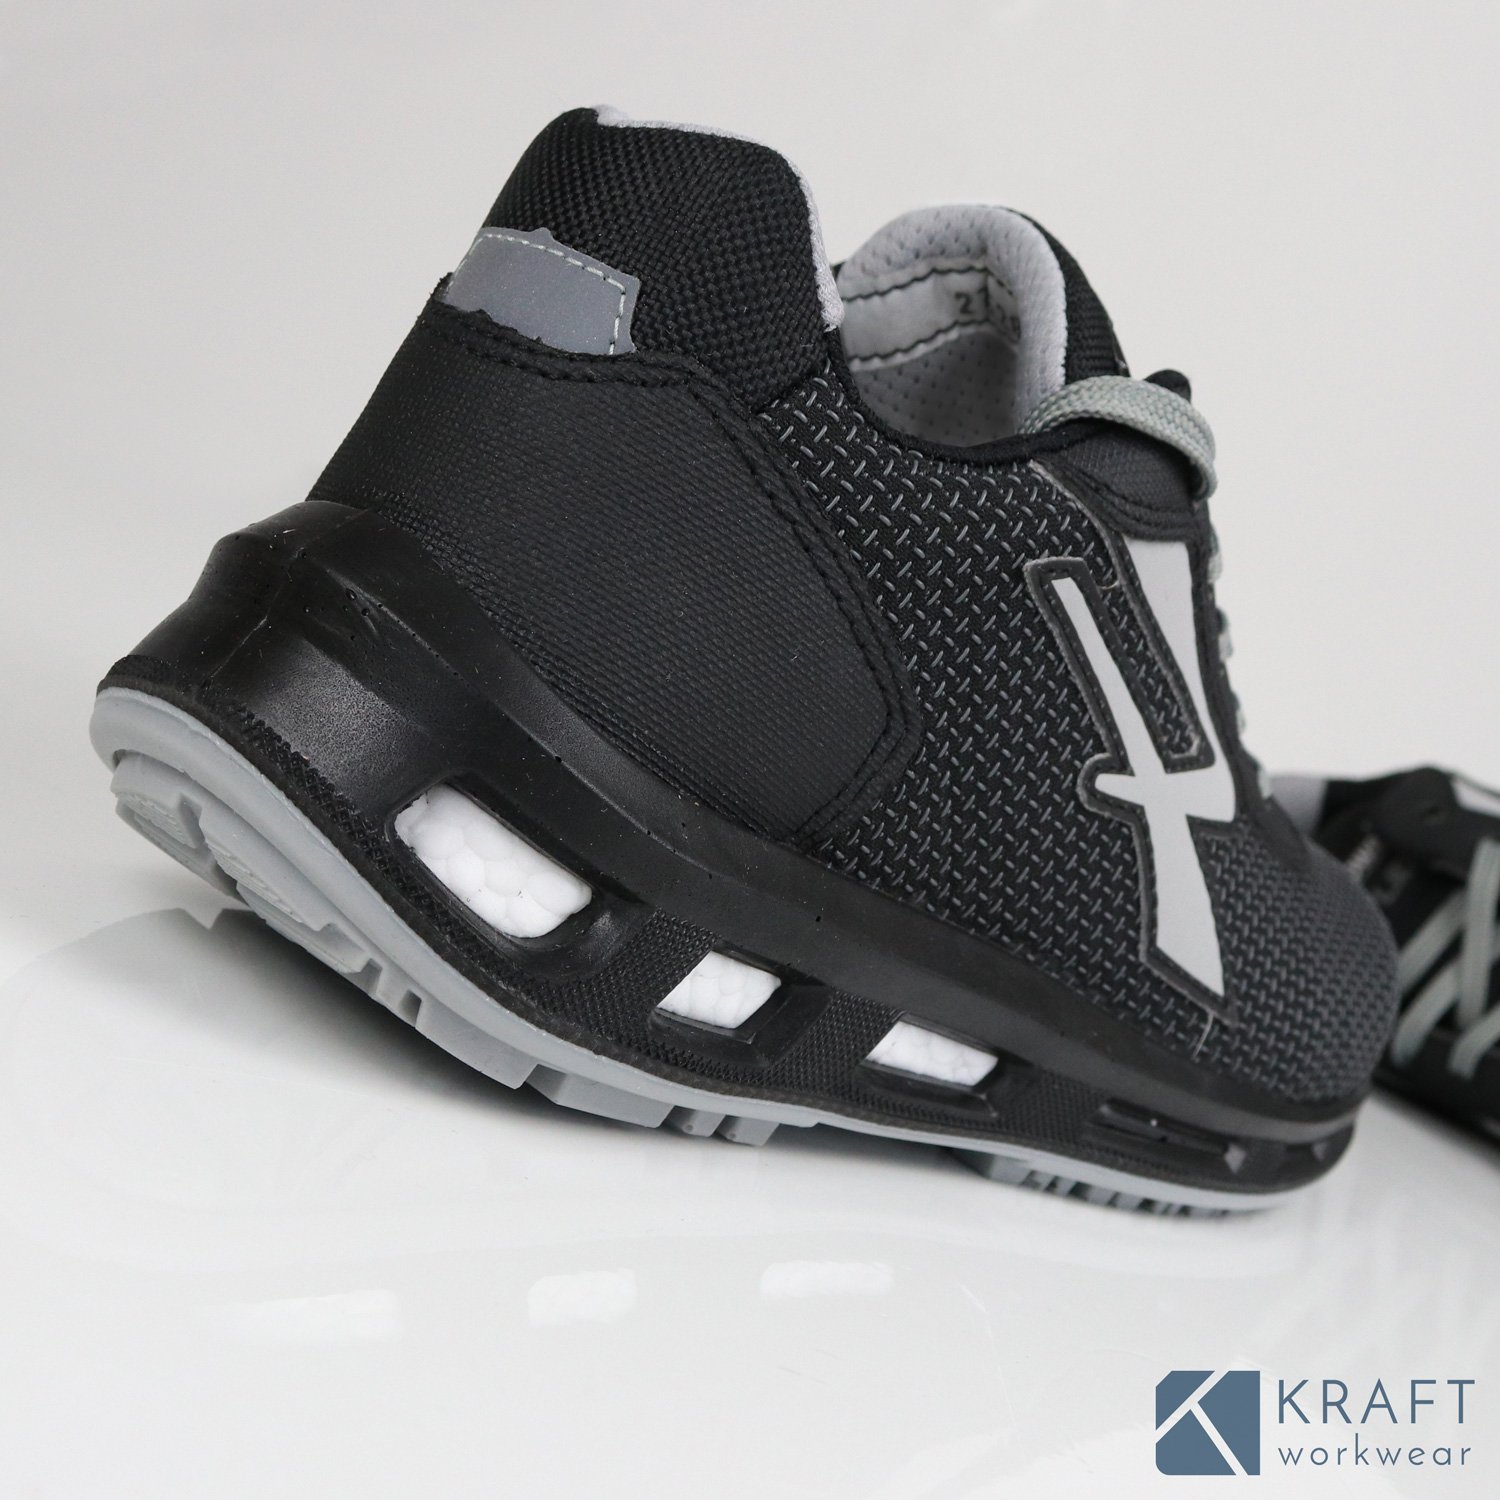 Chaussure de sécurité montante U-Power Stego - RedLion - Kraft Workwear